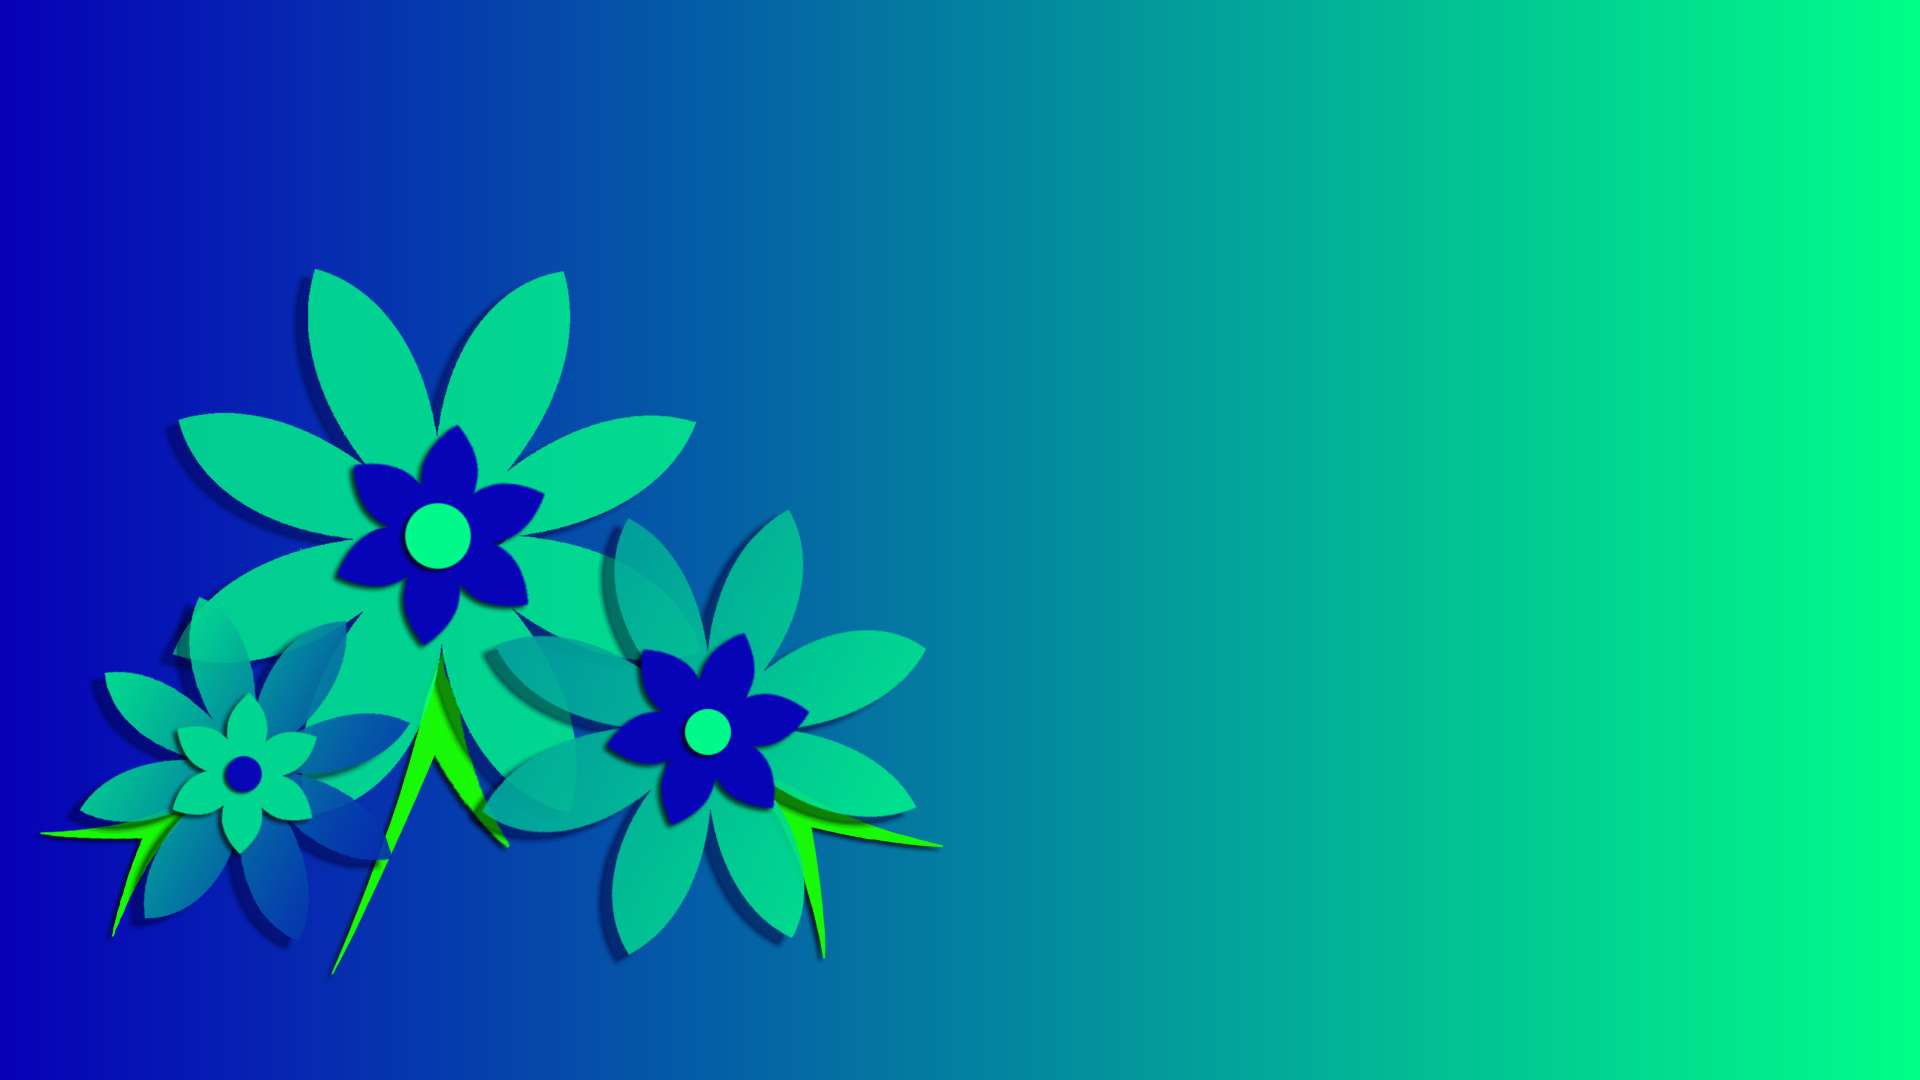 Abstract Artistic Blue Digital Art Flower Gradient Green 1920x1080